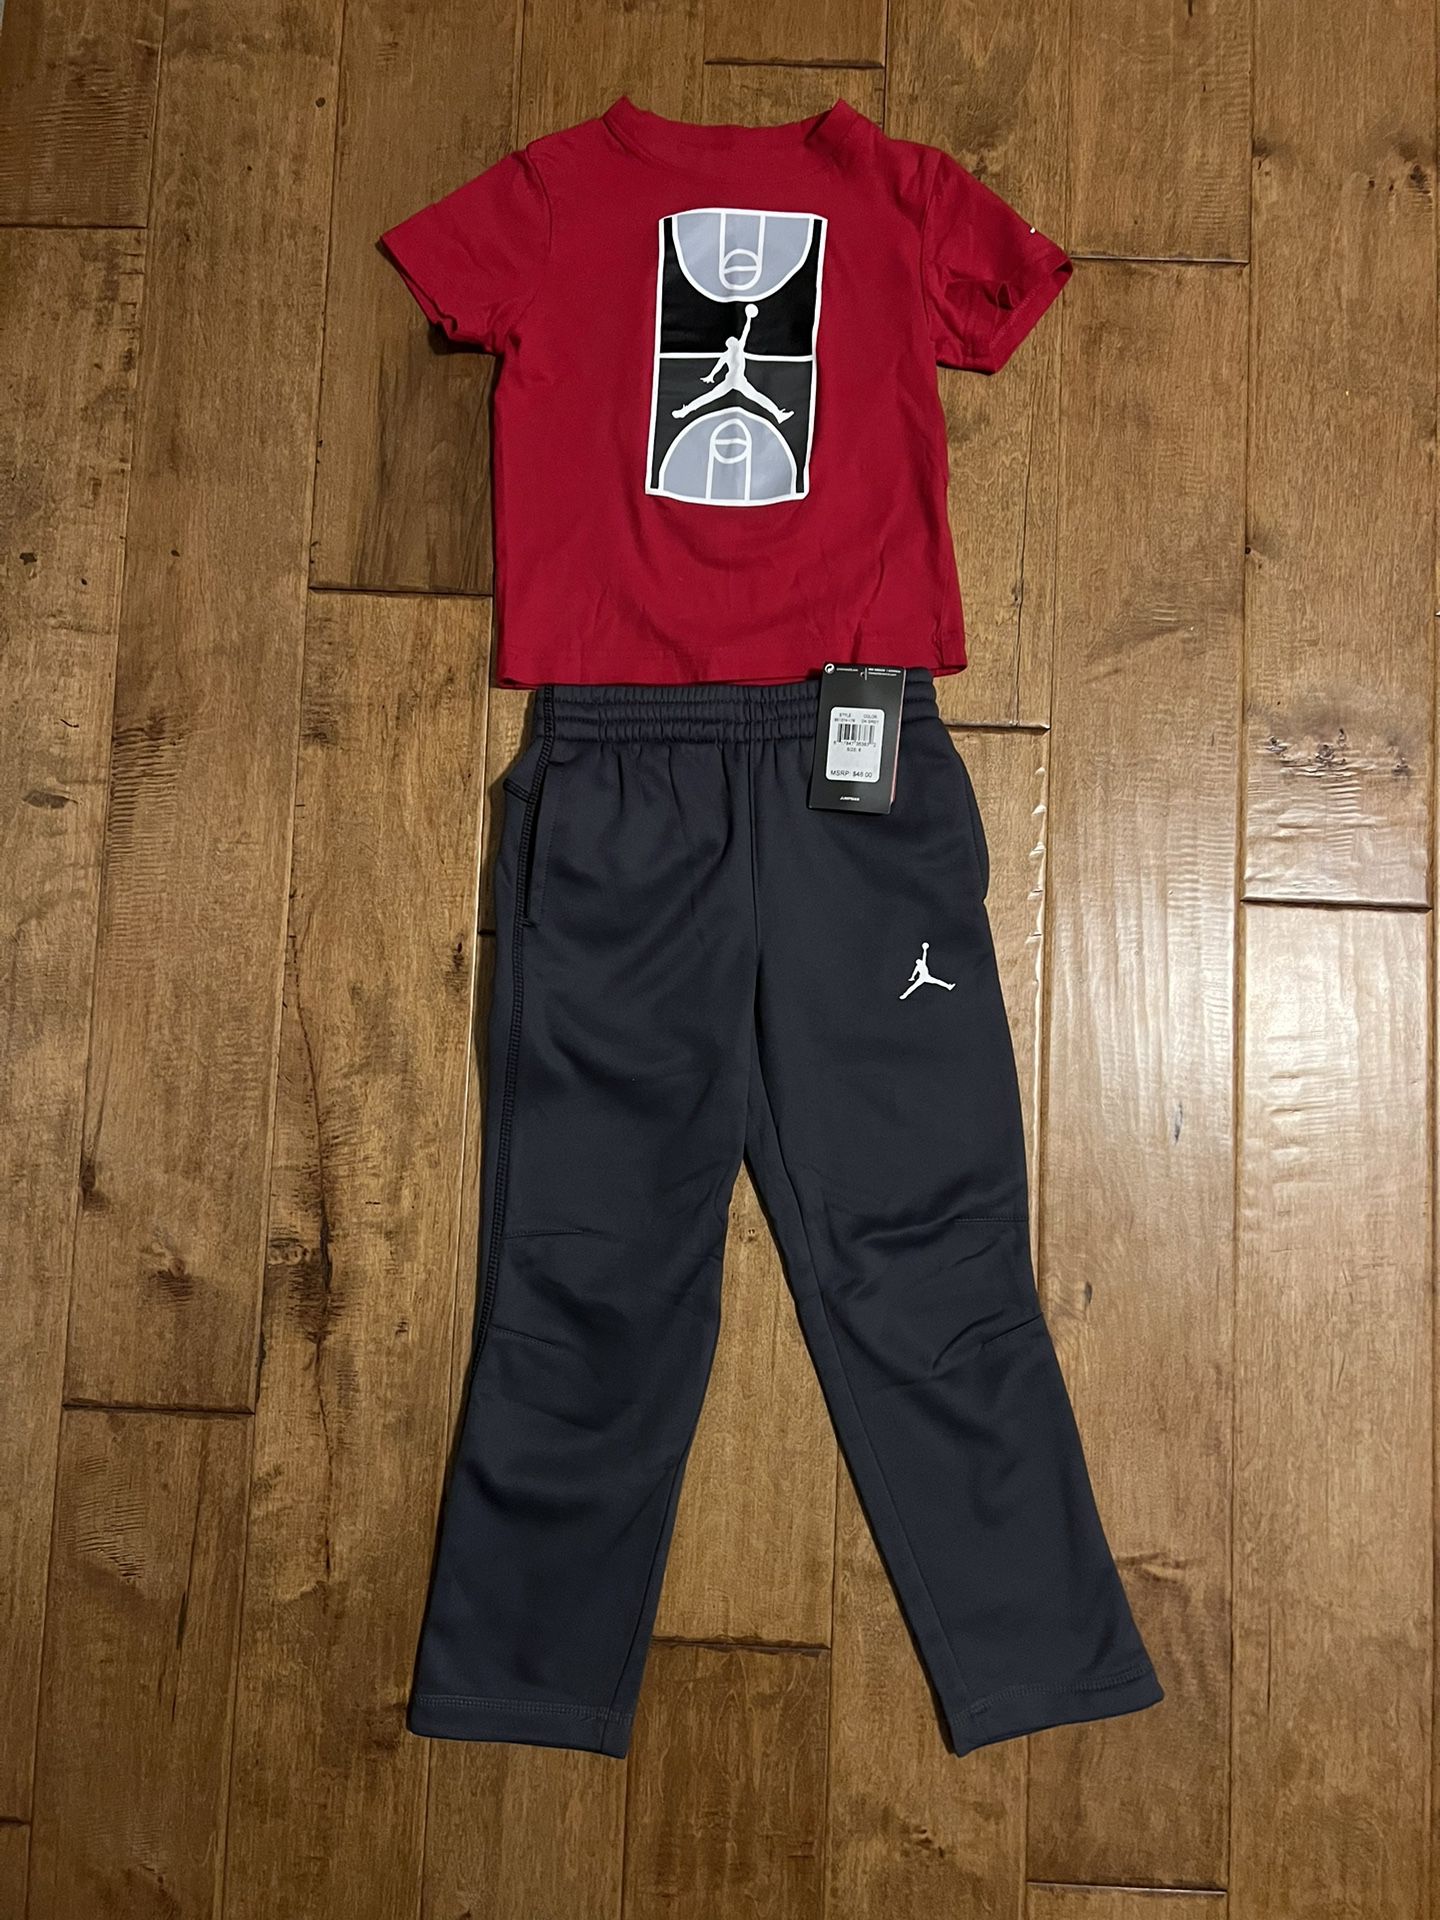 Boys Air Jordan Joggers and T-shirt Set Size 6